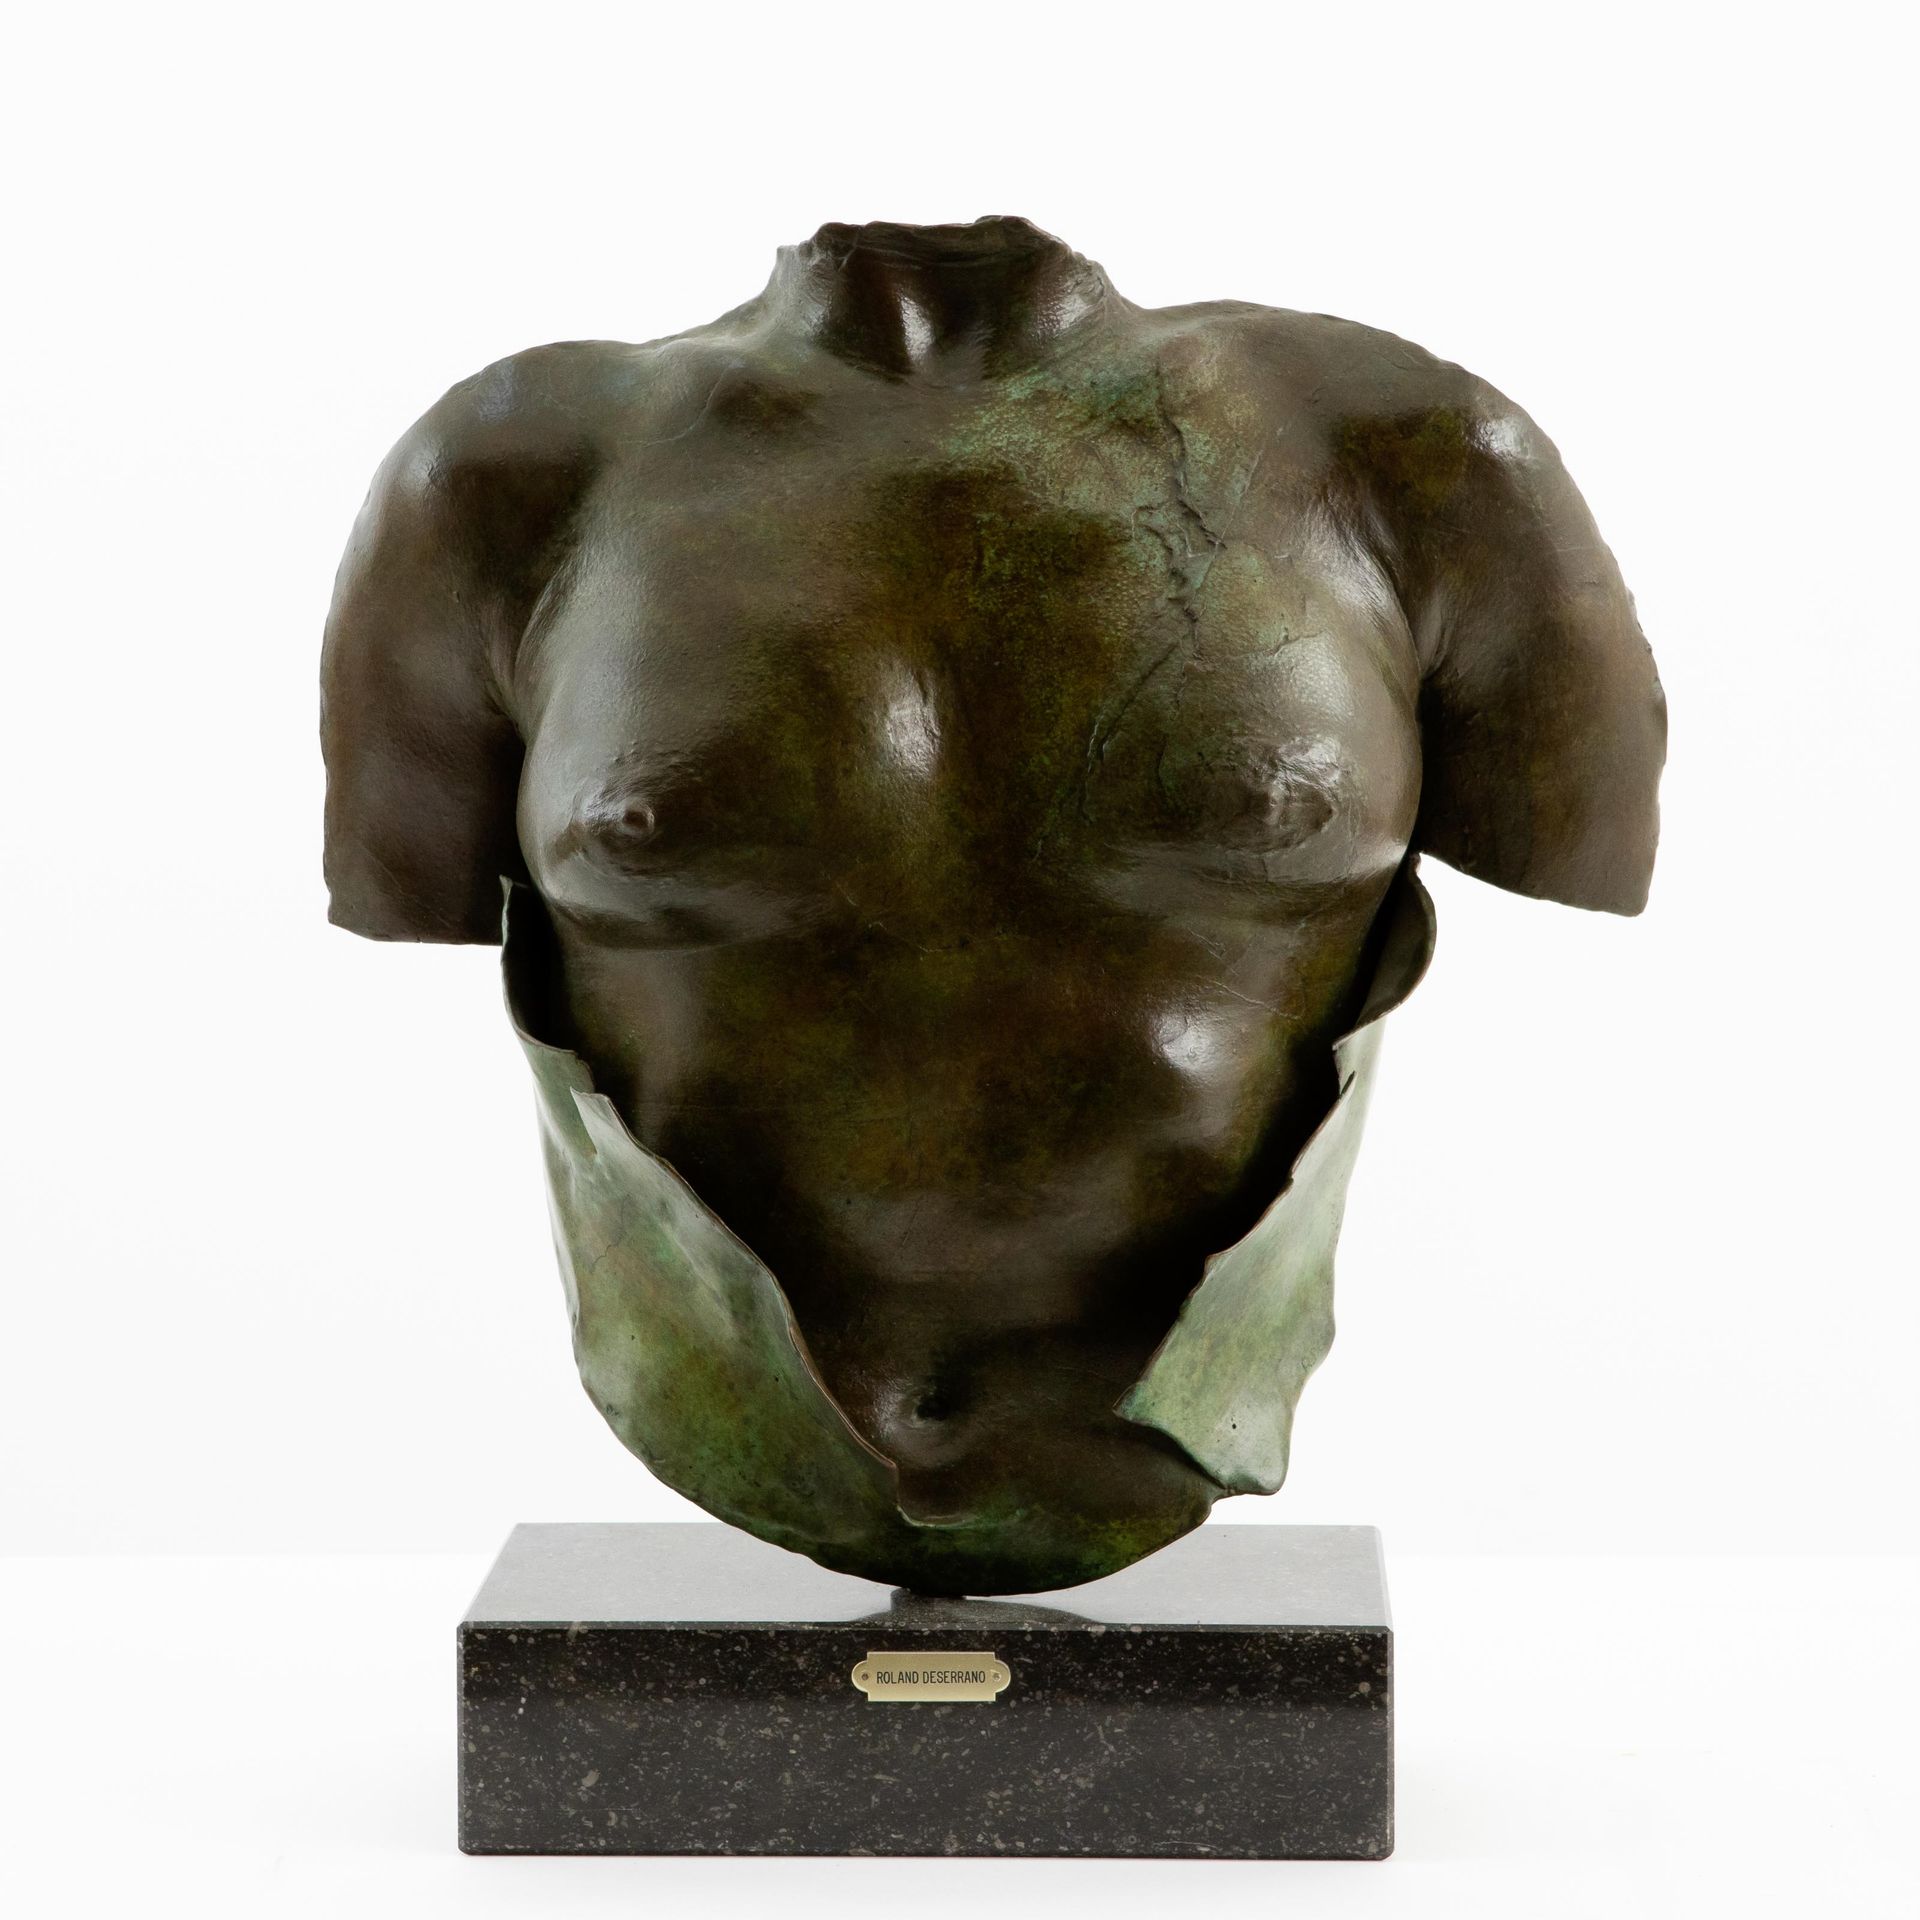 ROLAND DESERRANO 女性胸围。

青铜，绿色铜锈。

签名为 "R.Deser'.

大理石基座。

高：45厘米（高：8厘米（基座/托架））。